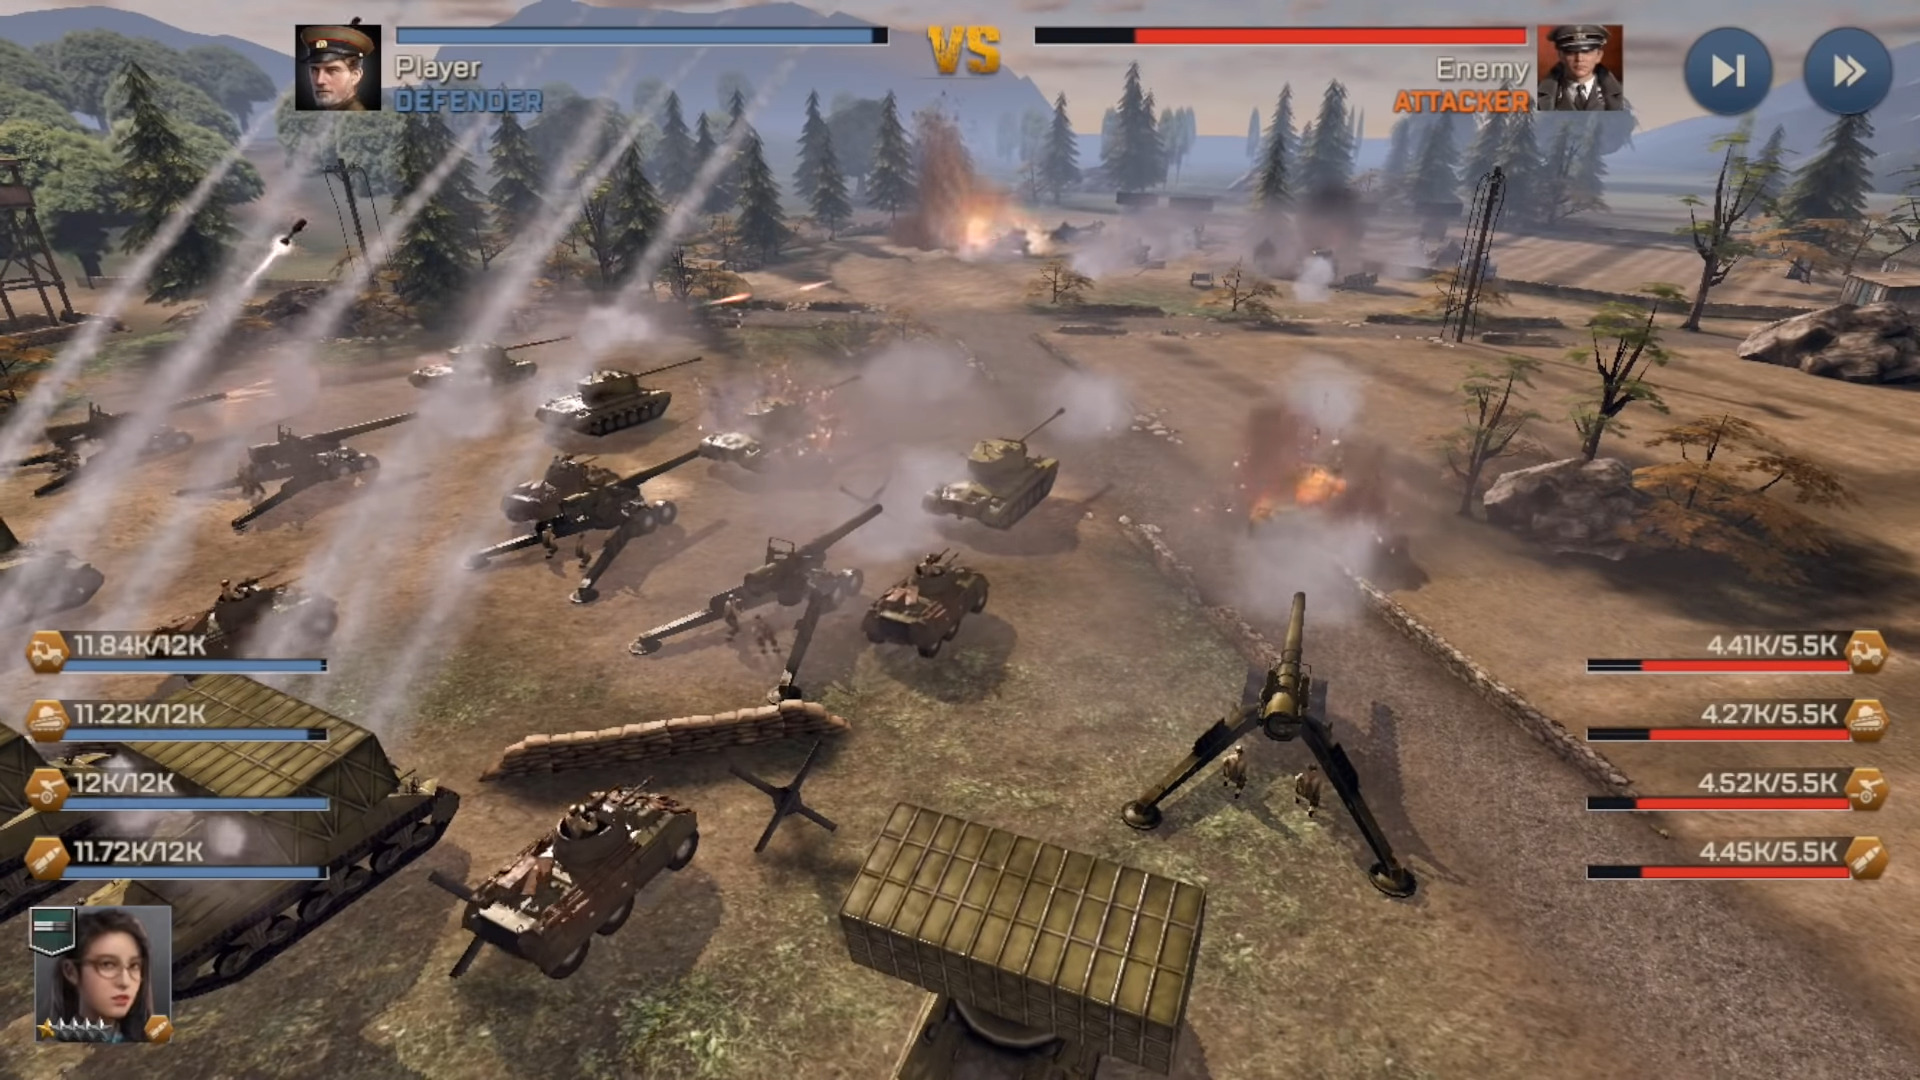 Kiss of War - Android game screenshots.